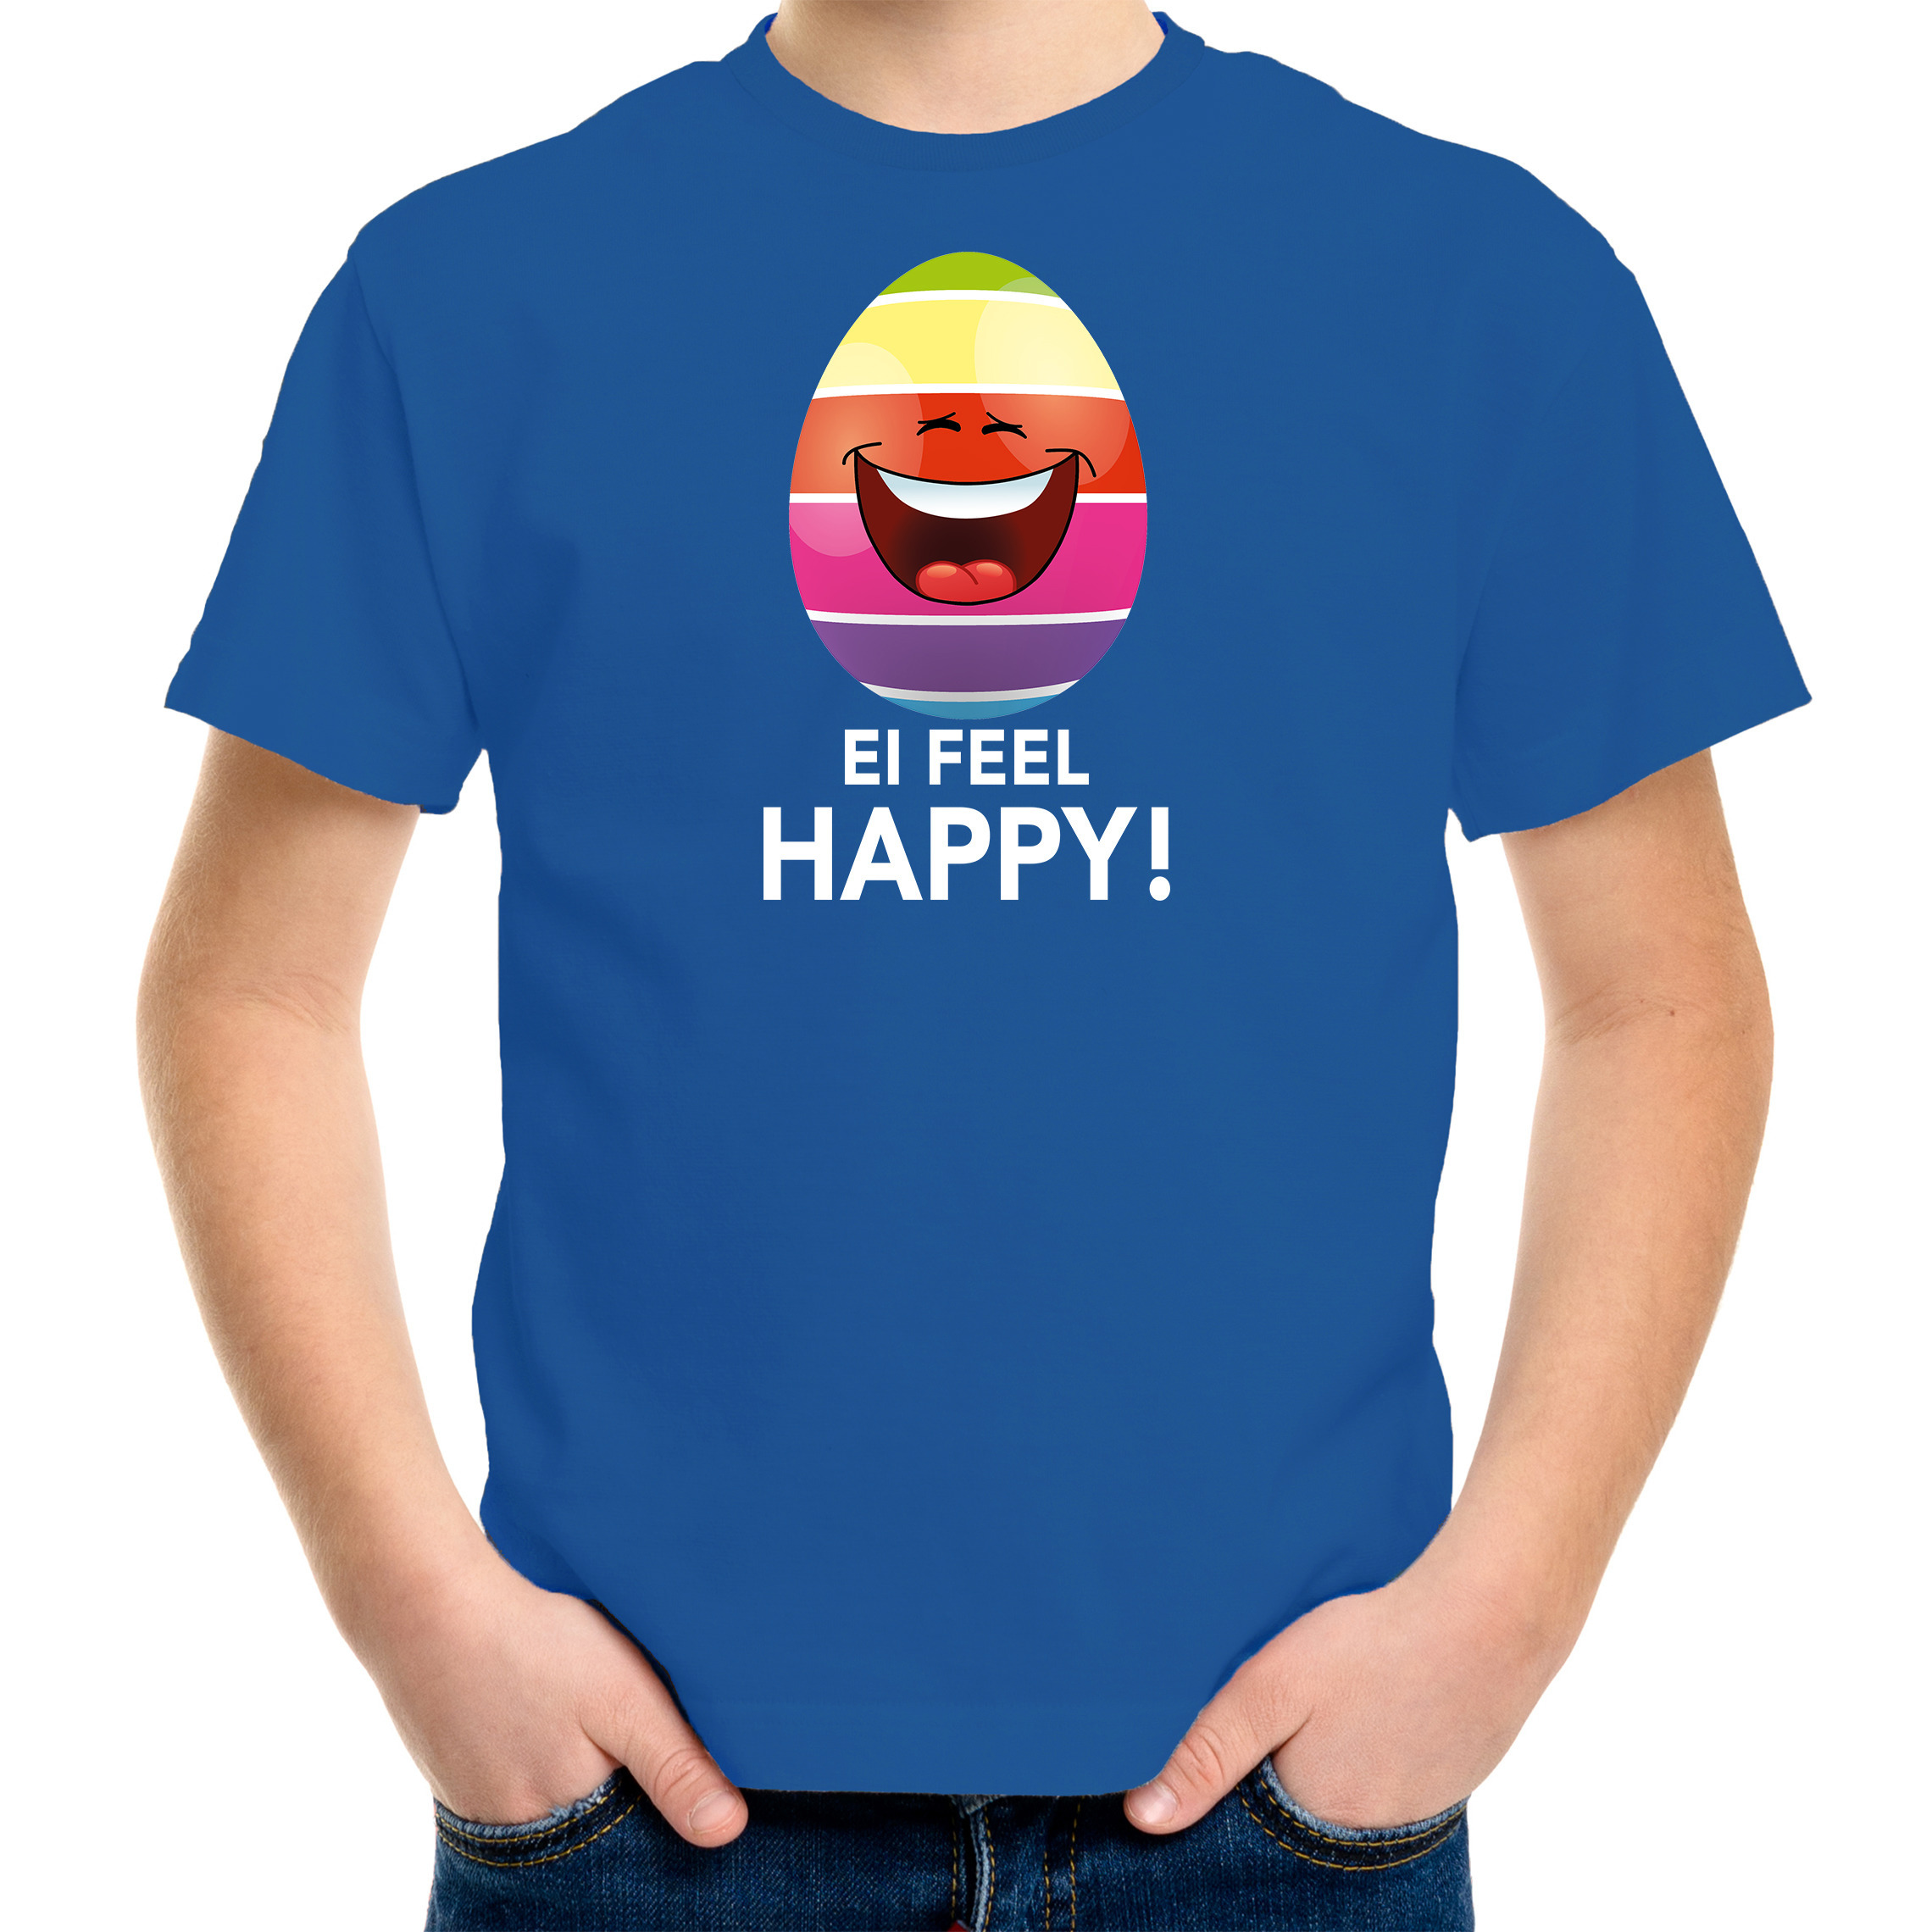 Vrolijk Paasei ei feel happy t-shirt blauw voor kinderen Paas kleding-outfit